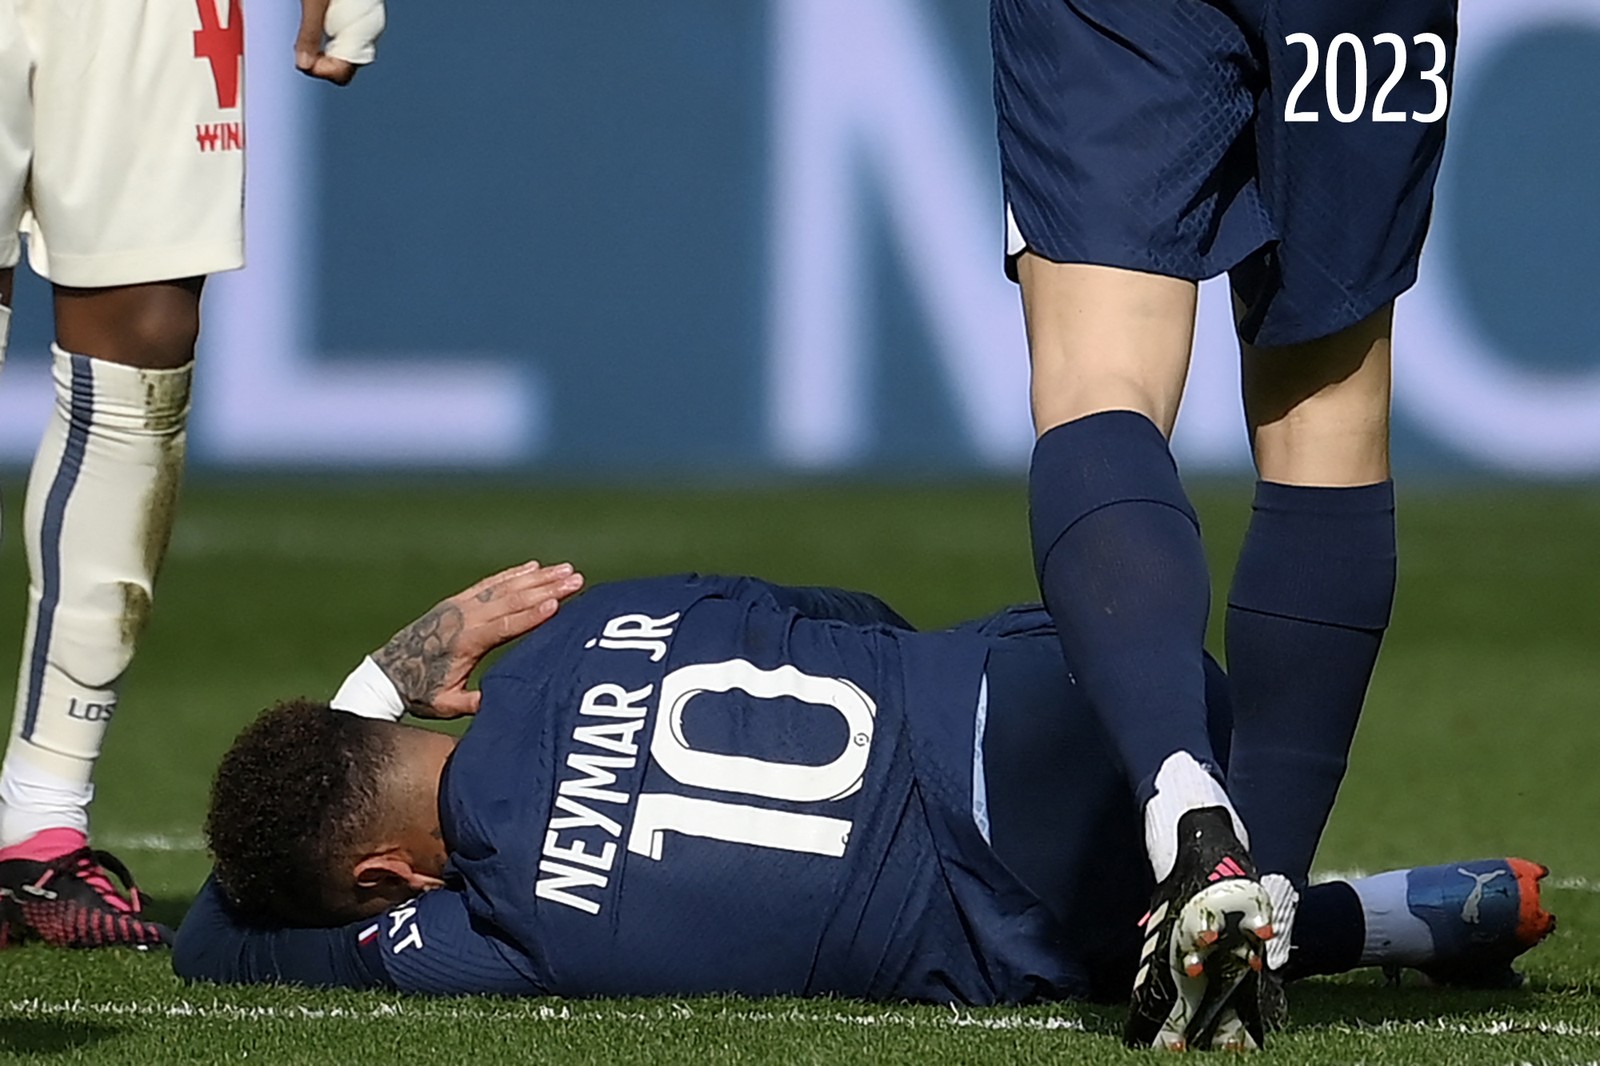 Neymar sofre grave lesão contra o Lille. A cirurgia nos ligamentos do tornozelo e pode afastá-lo por até 4 meses — Foto: FRANCK FIFE/AFP